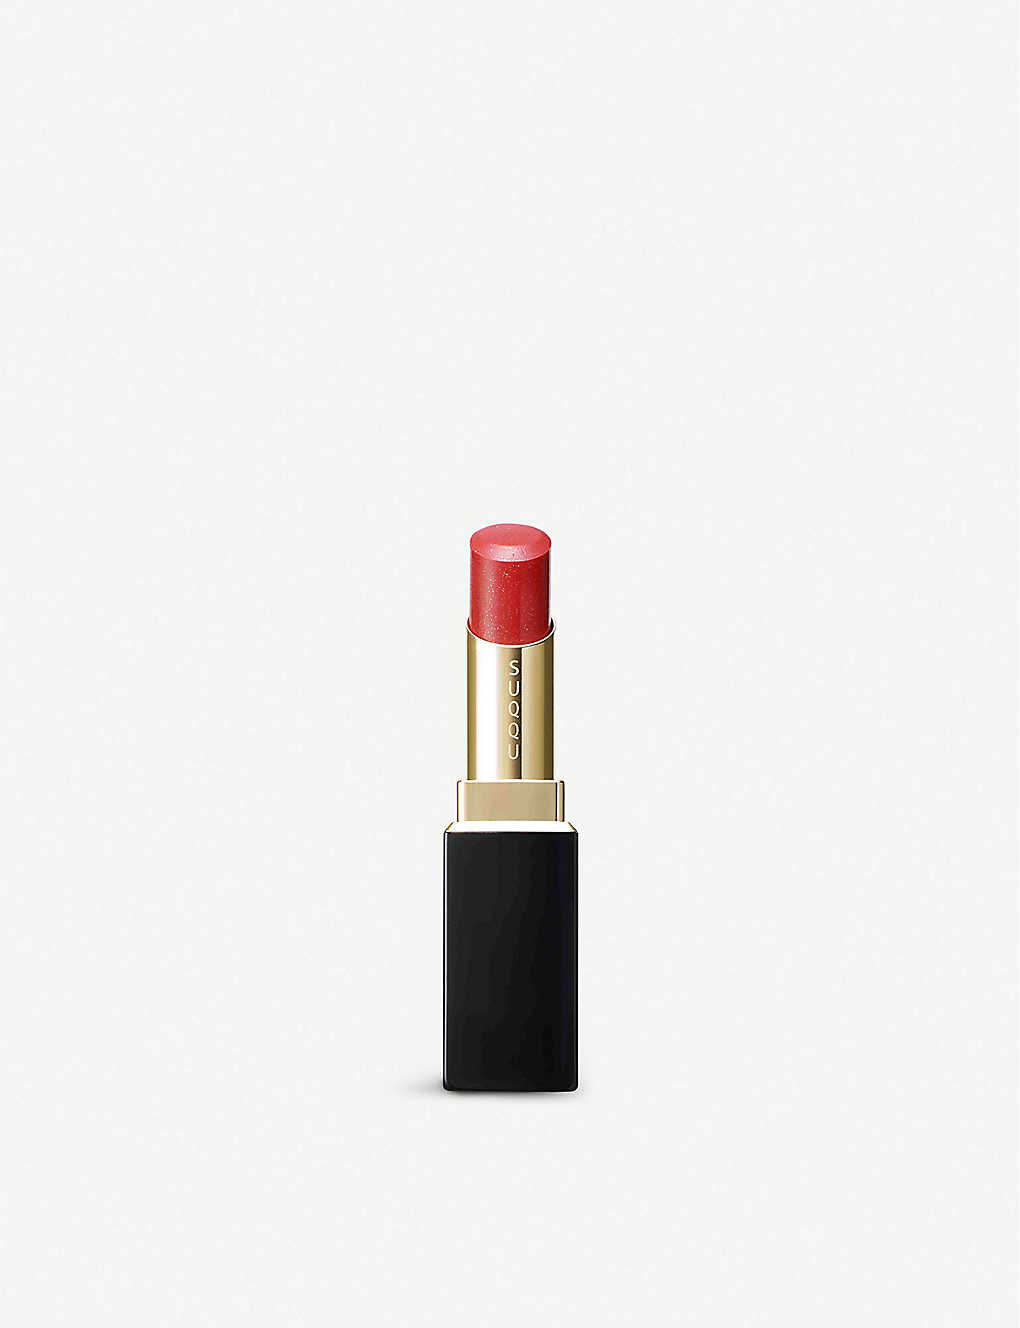 Suqqu Moisture Rich Lipstick In Cardinal Red